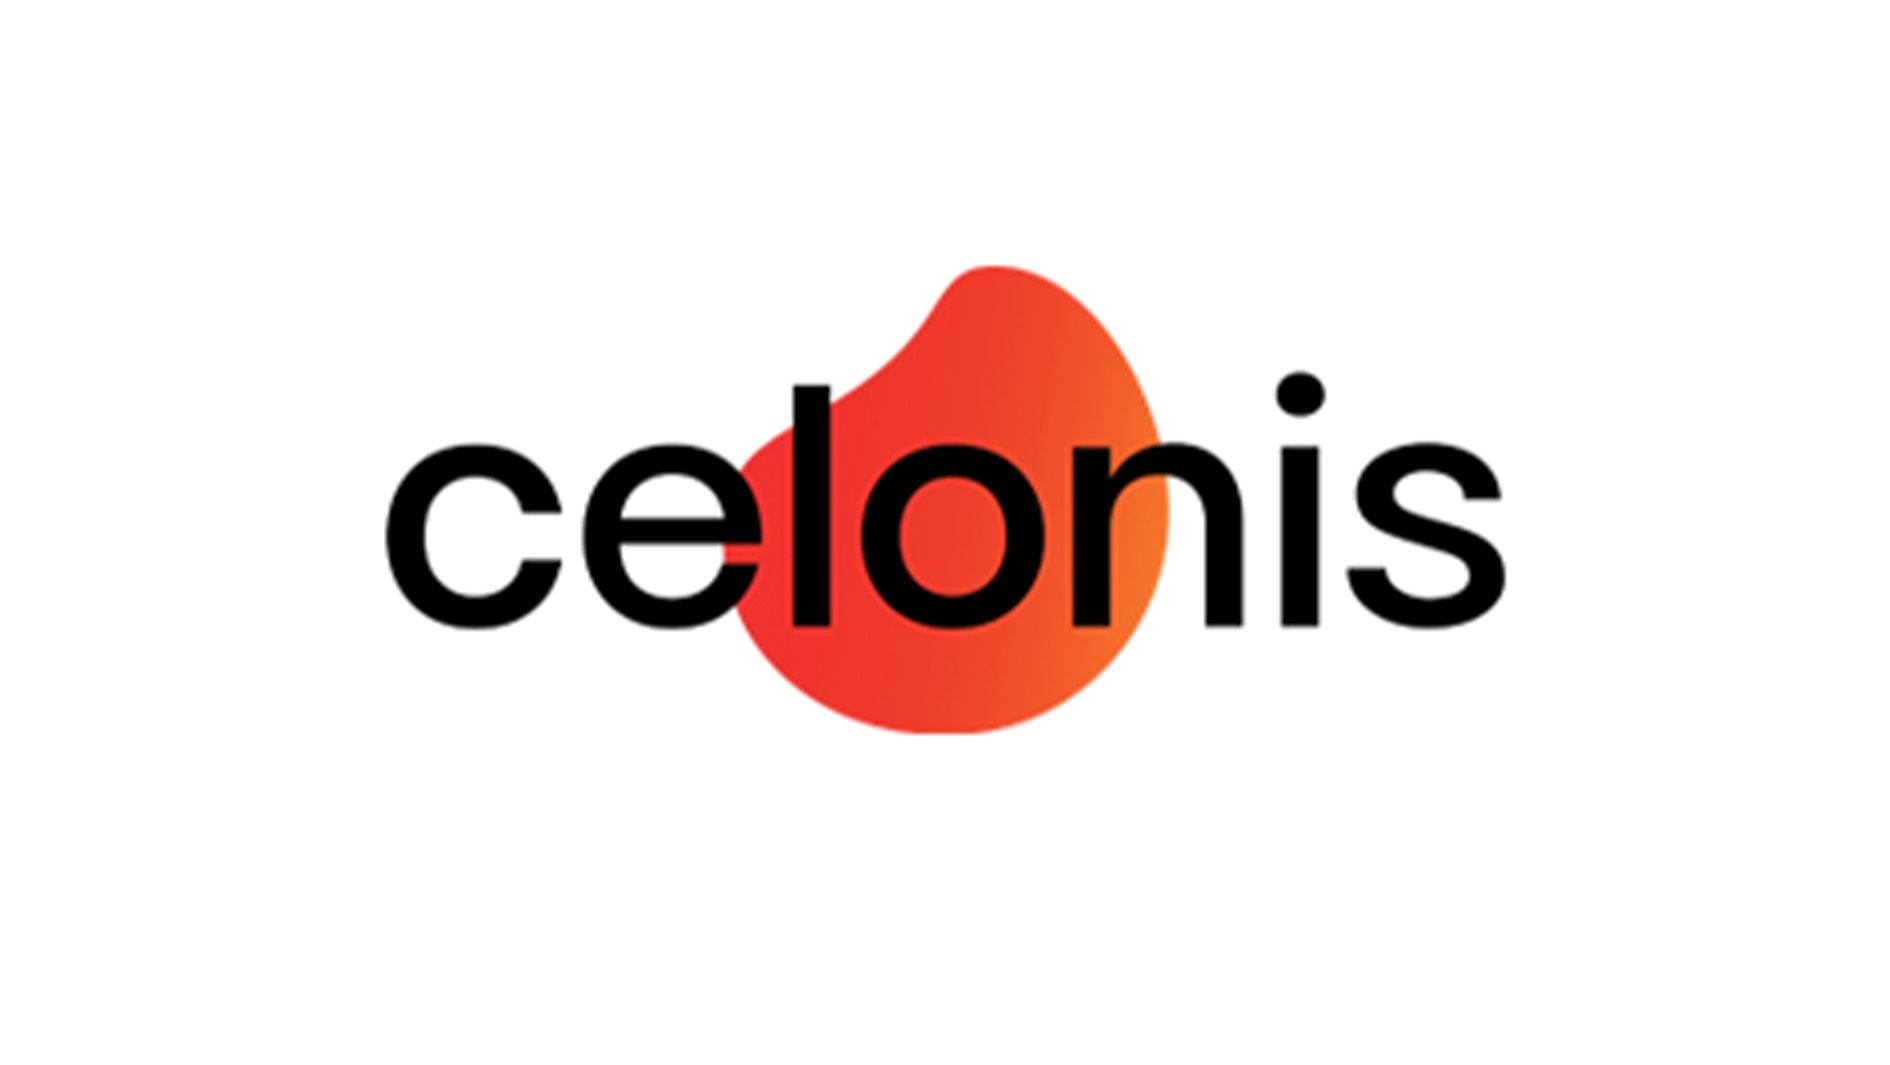 Industries-Logos-Celonis.jpg